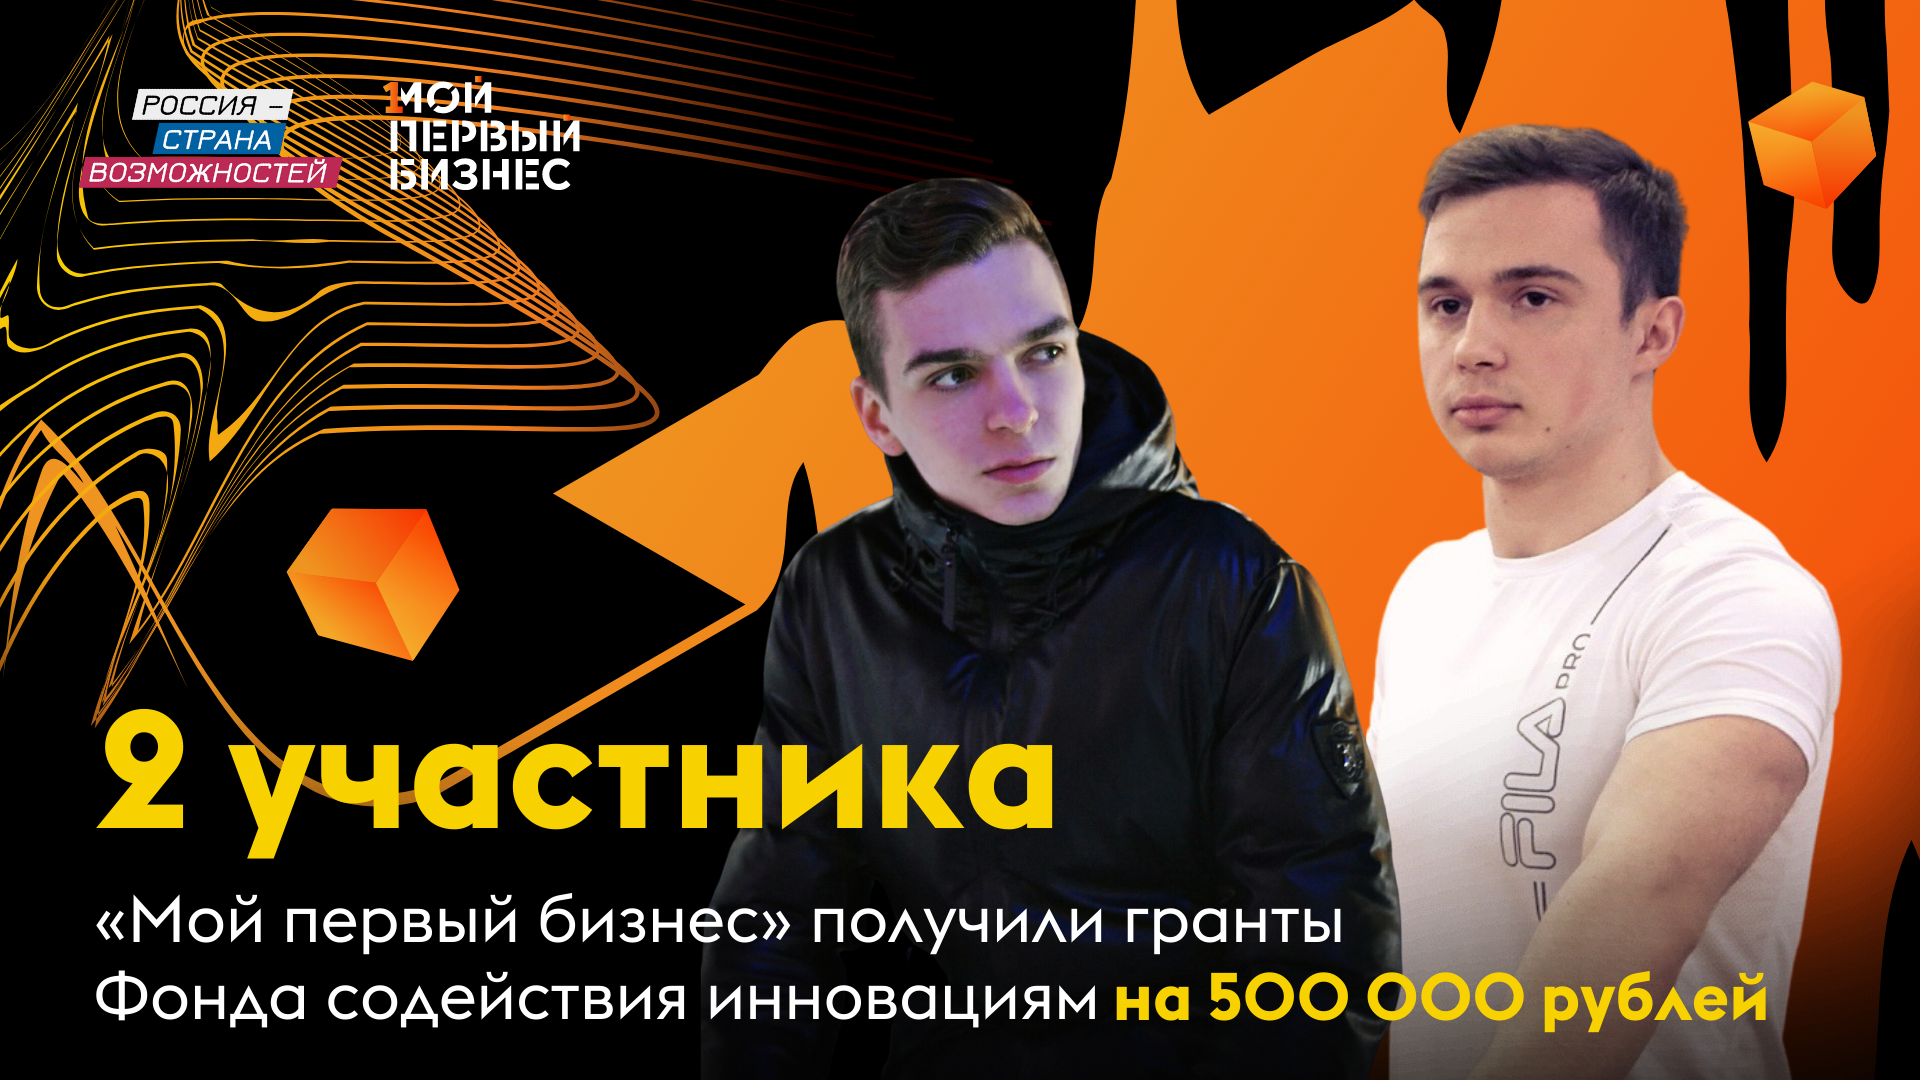 Два участника конкурса «Мой первый бизнес» выиграли гранты на развитие проектов на сумму 500 тысяч рублей